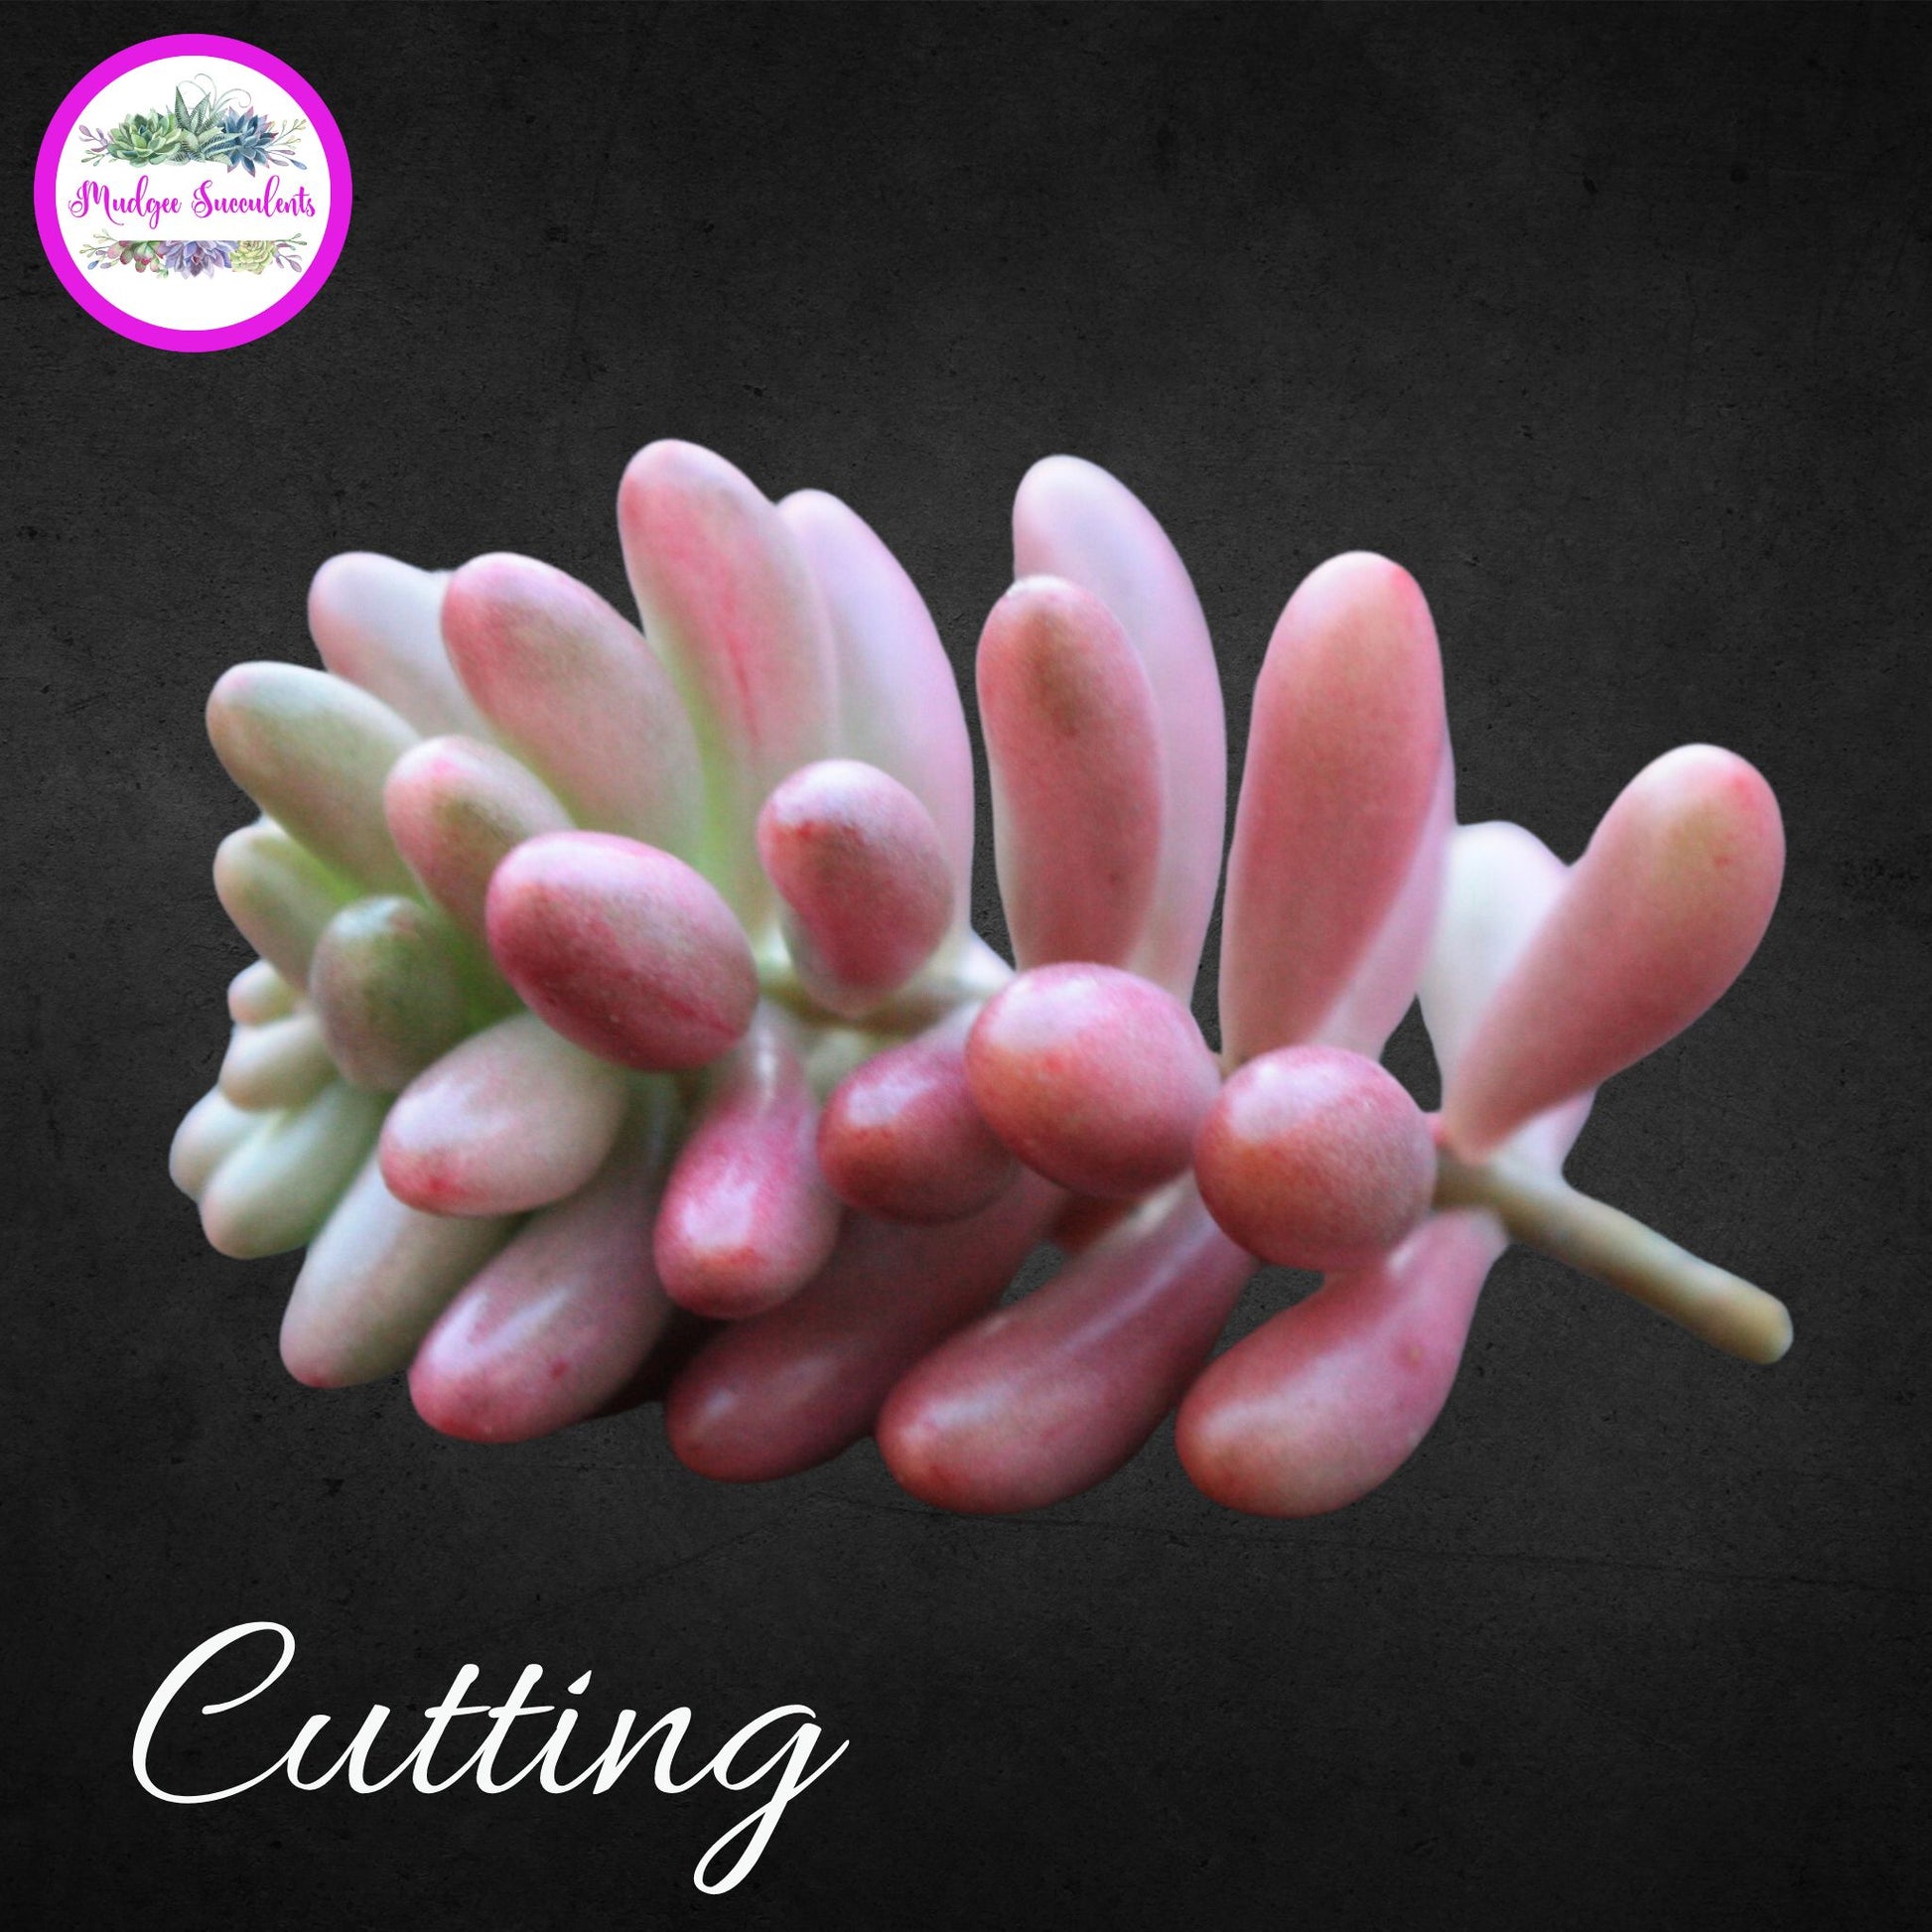 Succulent Cutting - Sedum rubrotinctum 'Aurora' - Mudgee Succulents Online Shop